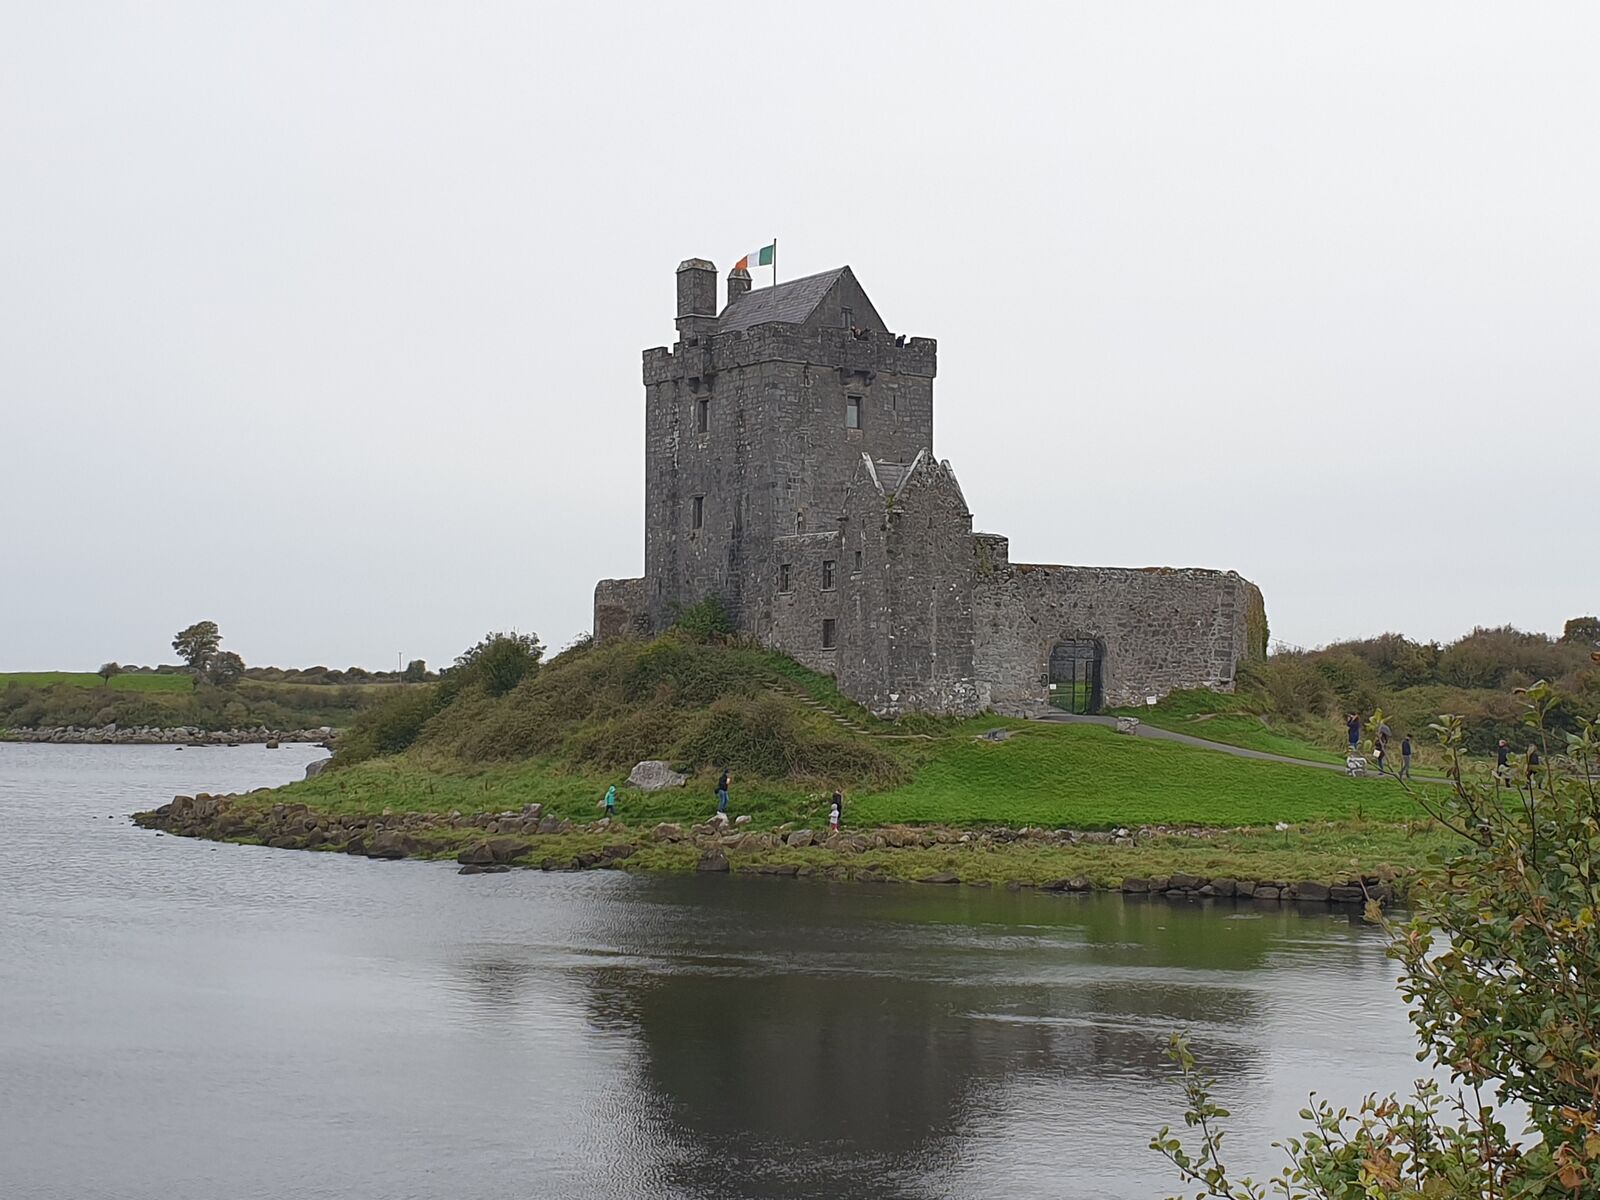 Dunguaire Castle: A typical Irish castle